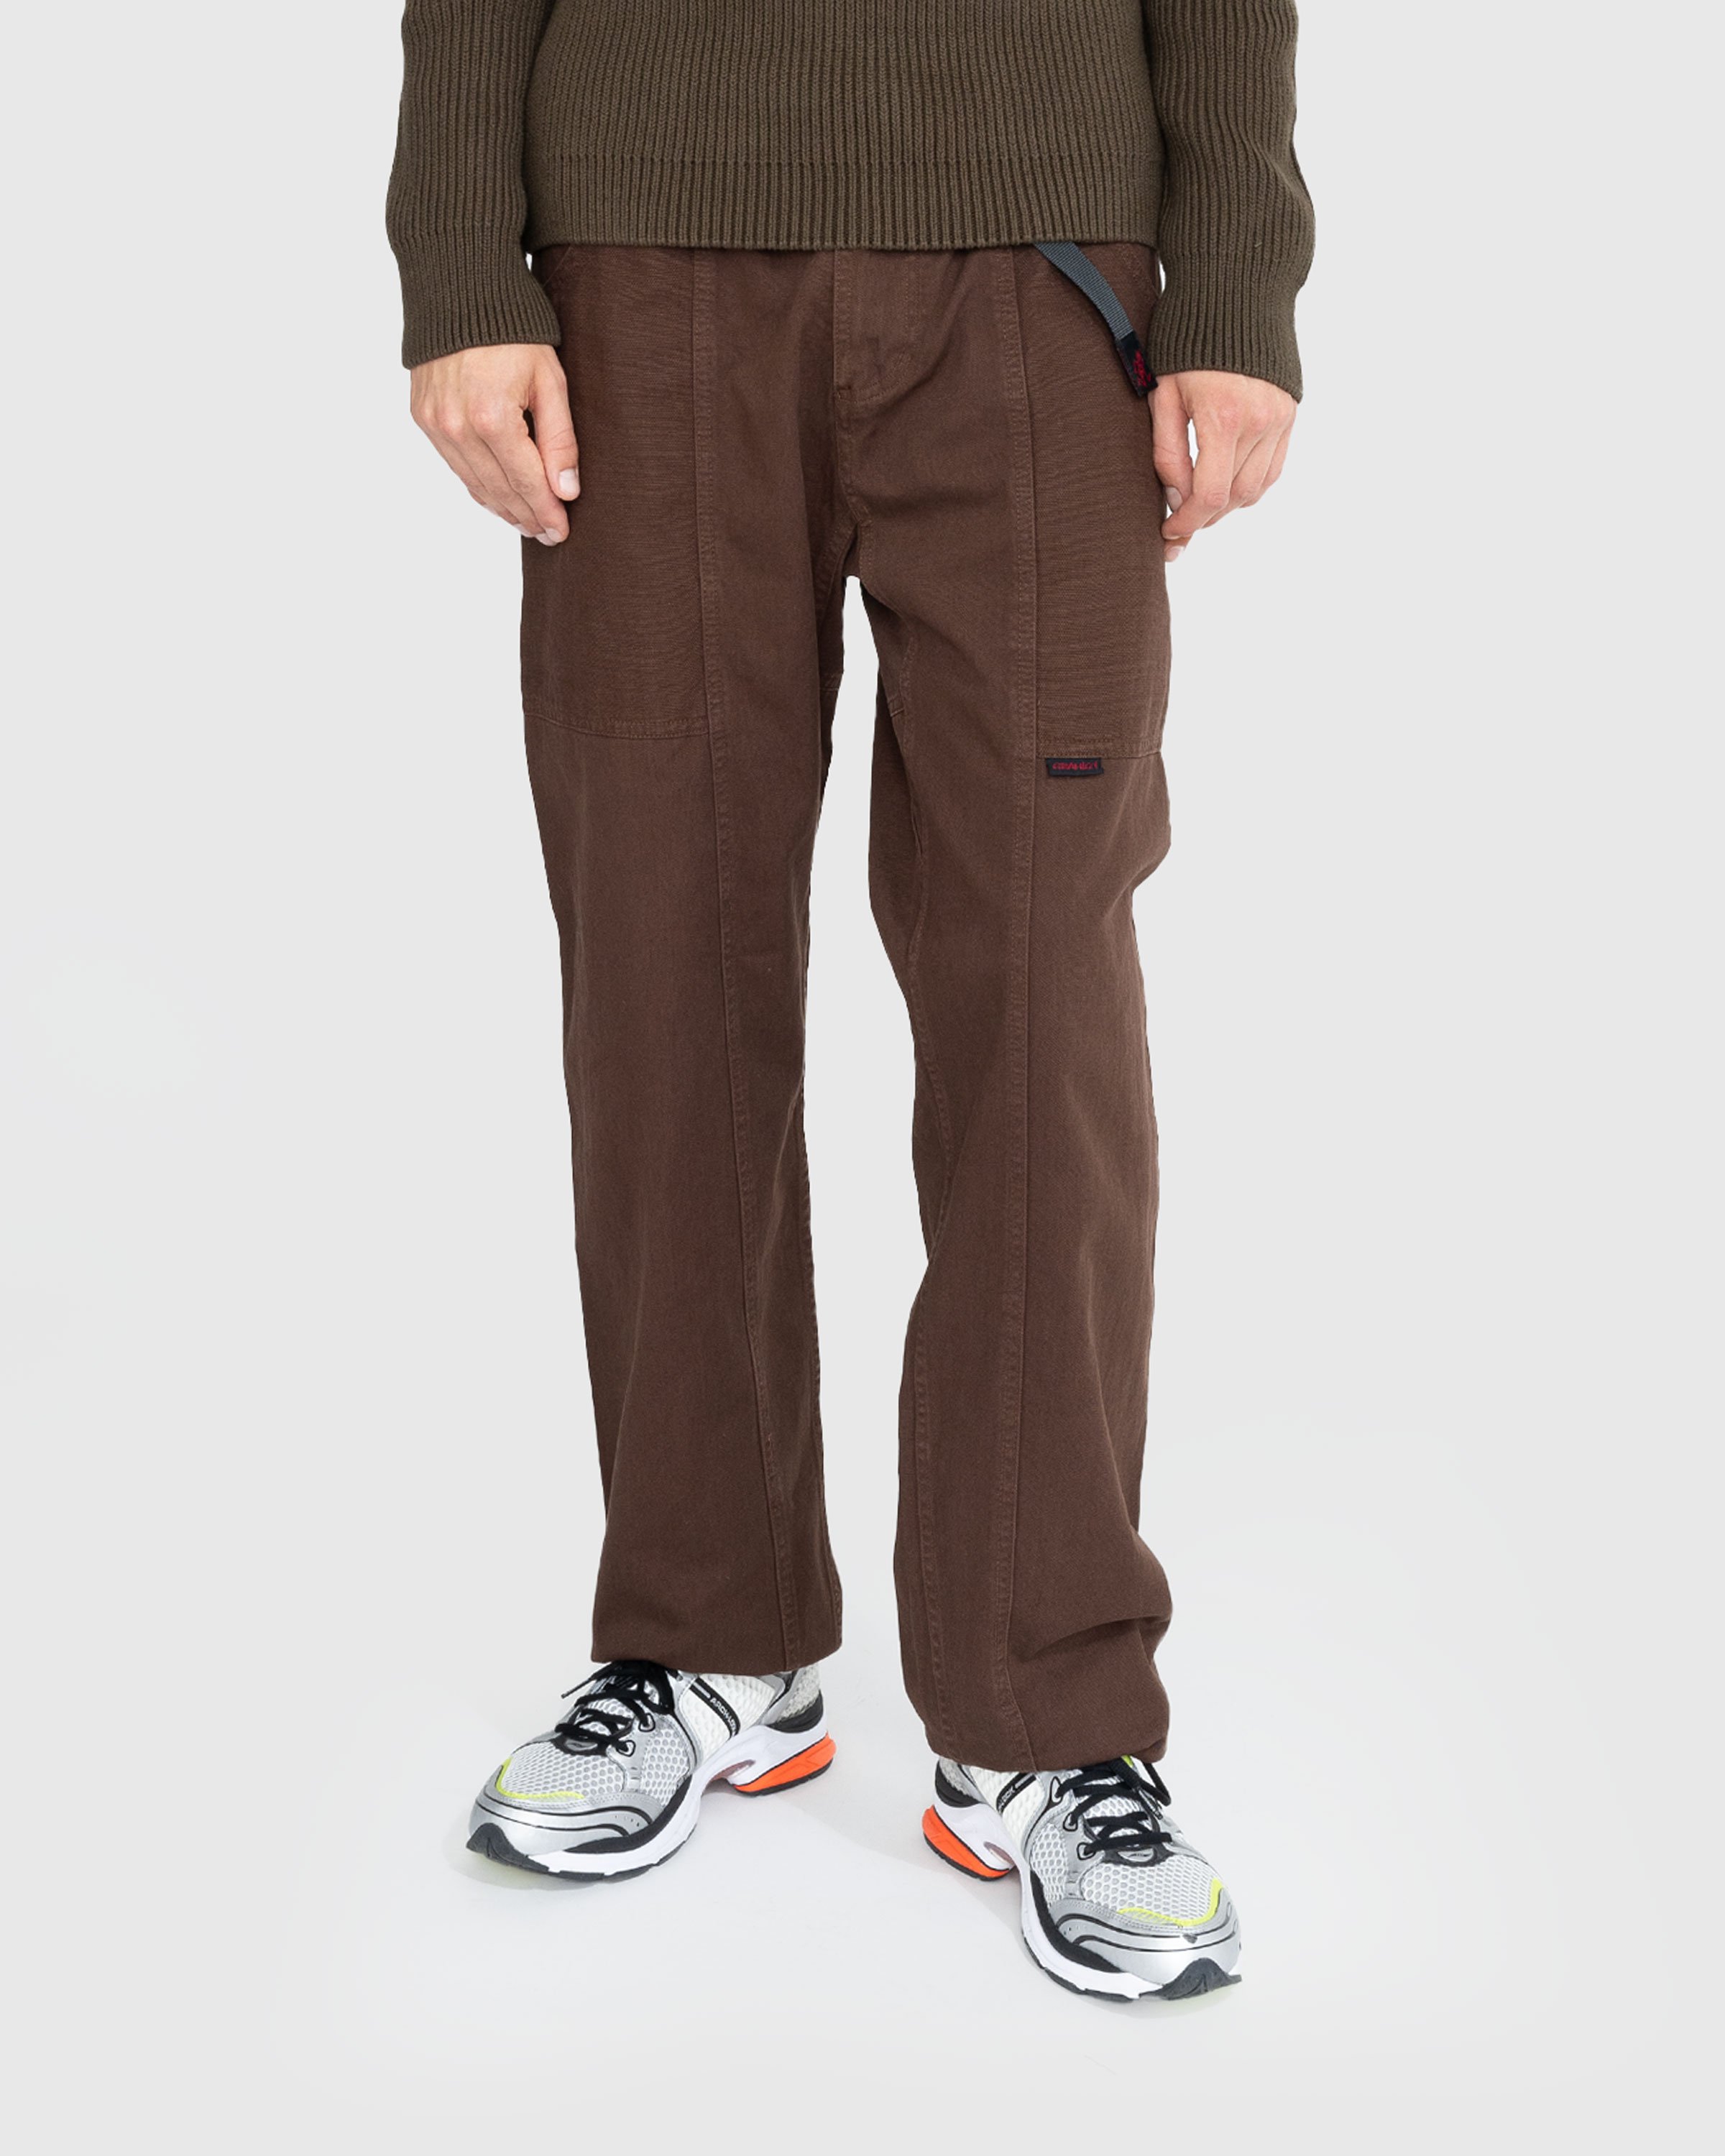 Gramicci - GADGET PANT - Clothing - Brown - Image 4